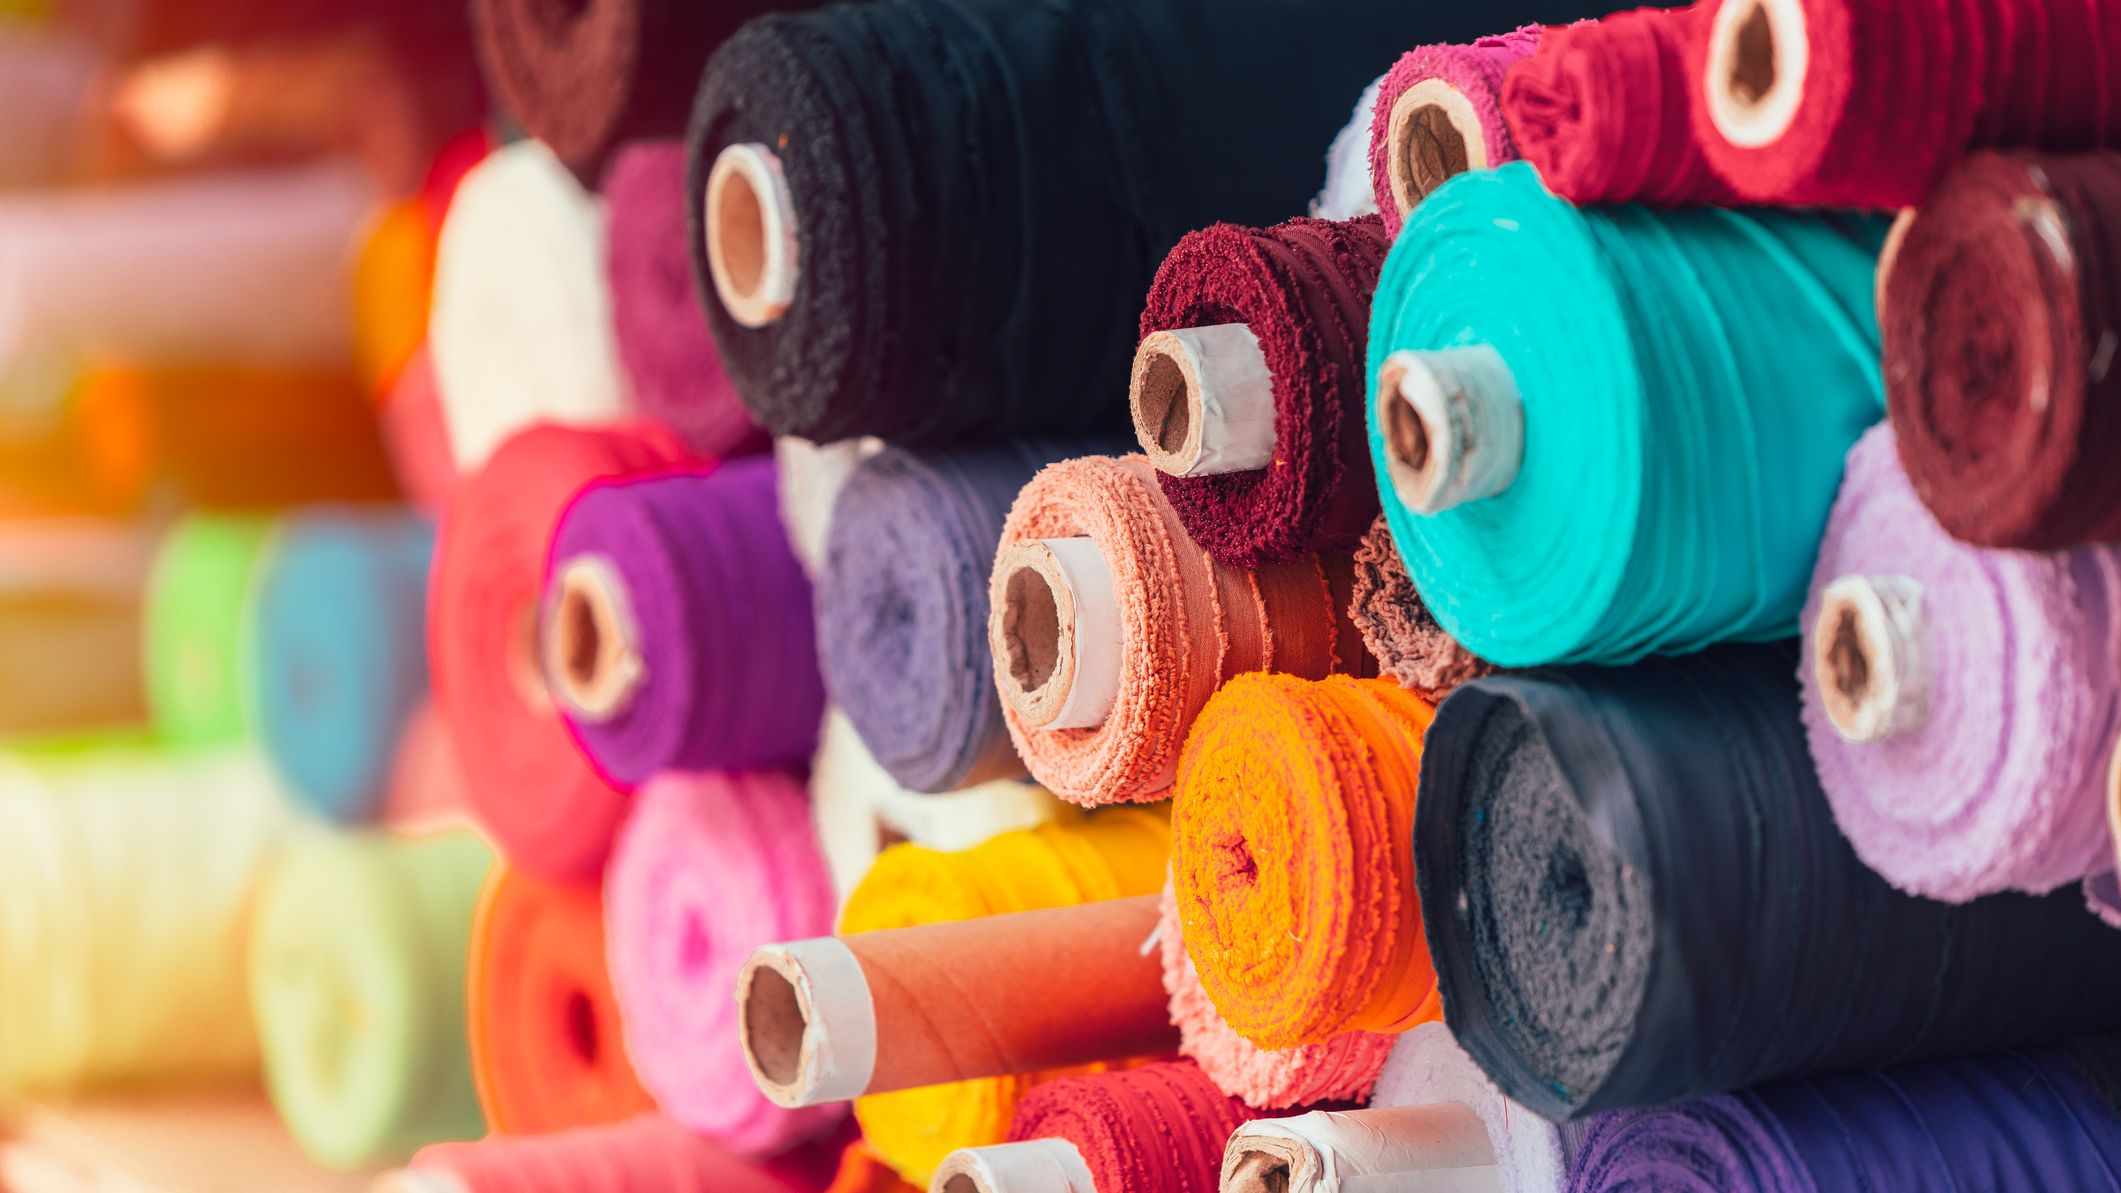 Vente de tissus - tissu coton tissu au metre – achat tissu habillement